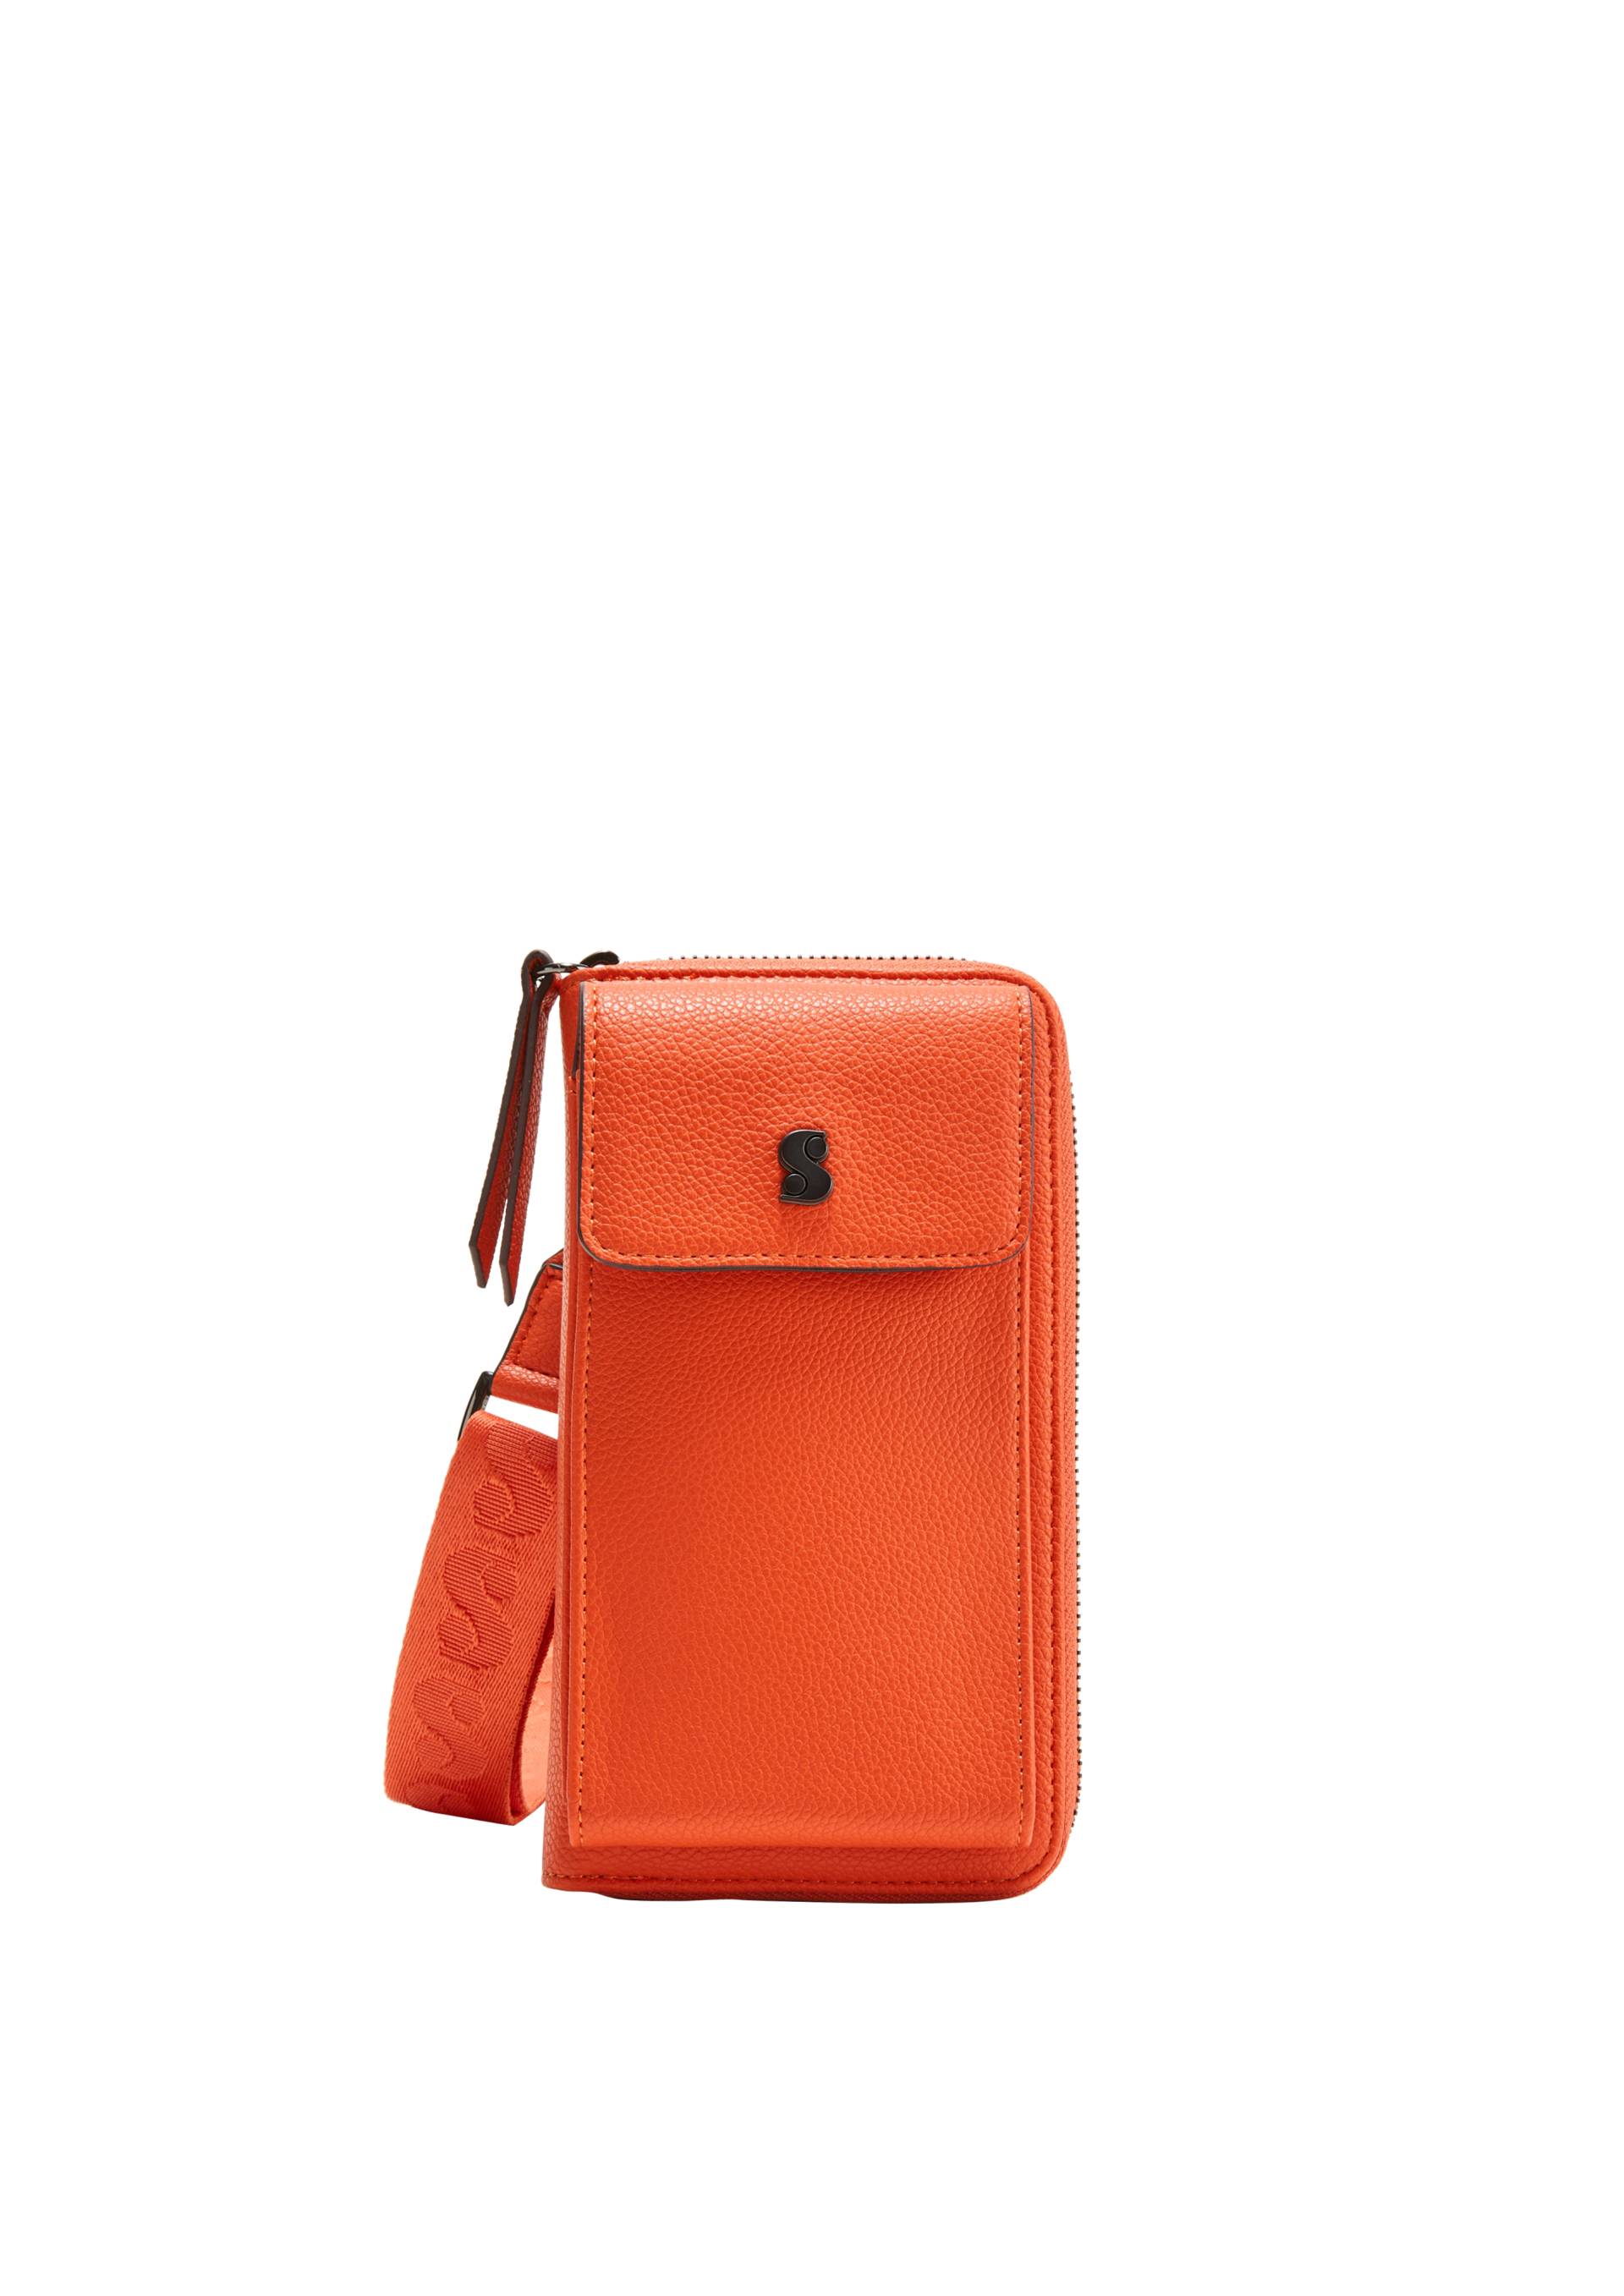 s.Oliver - Phone Bag in Leder-Optik, Damen, Orange von s.Oliver